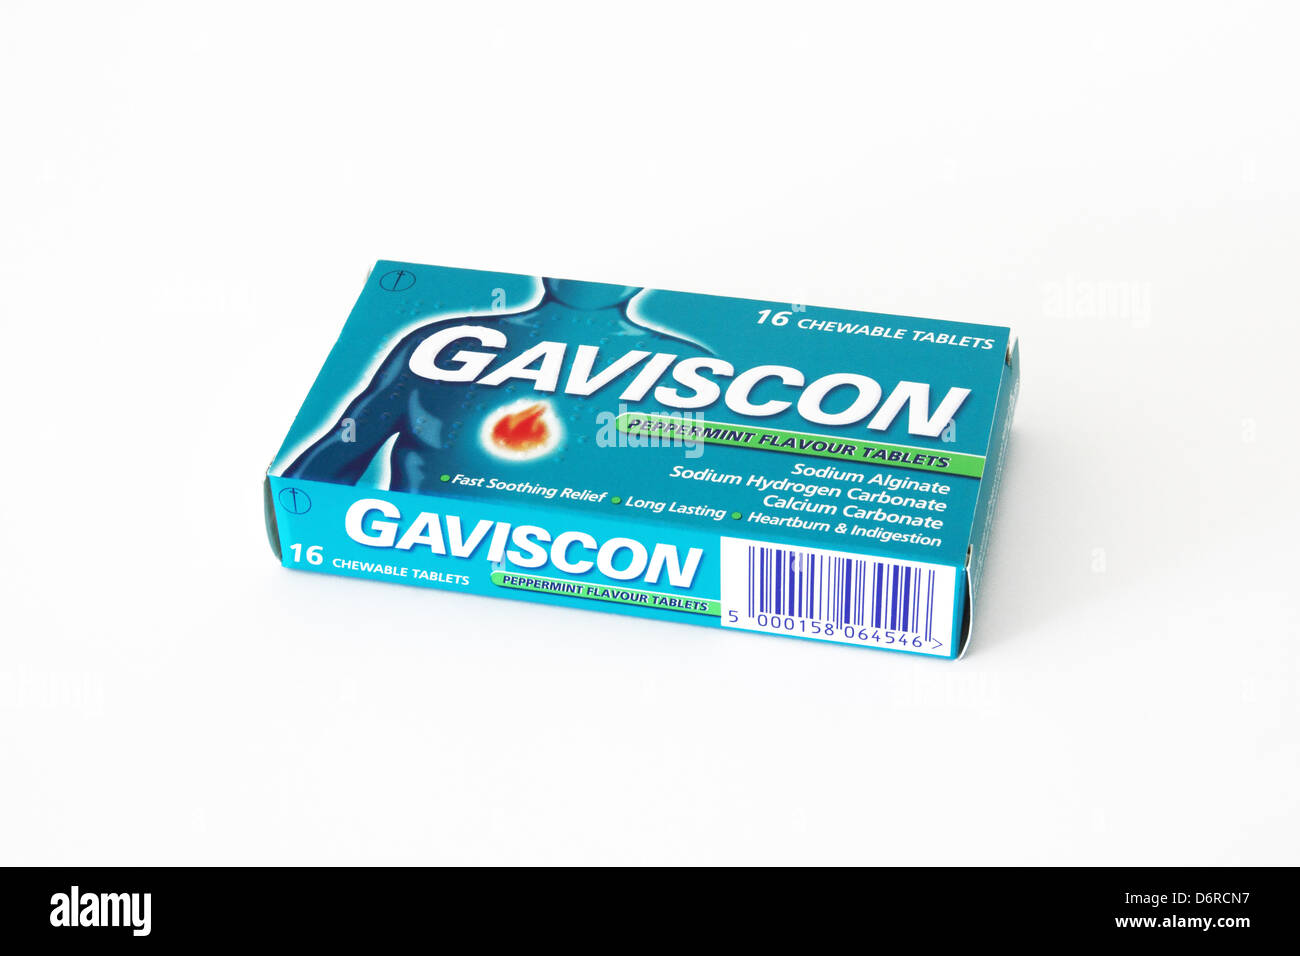 Paket von Gaviscon Pfefferminz-Aroma-Tabletten auf weißem Hintergrund  Stockfotografie - Alamy